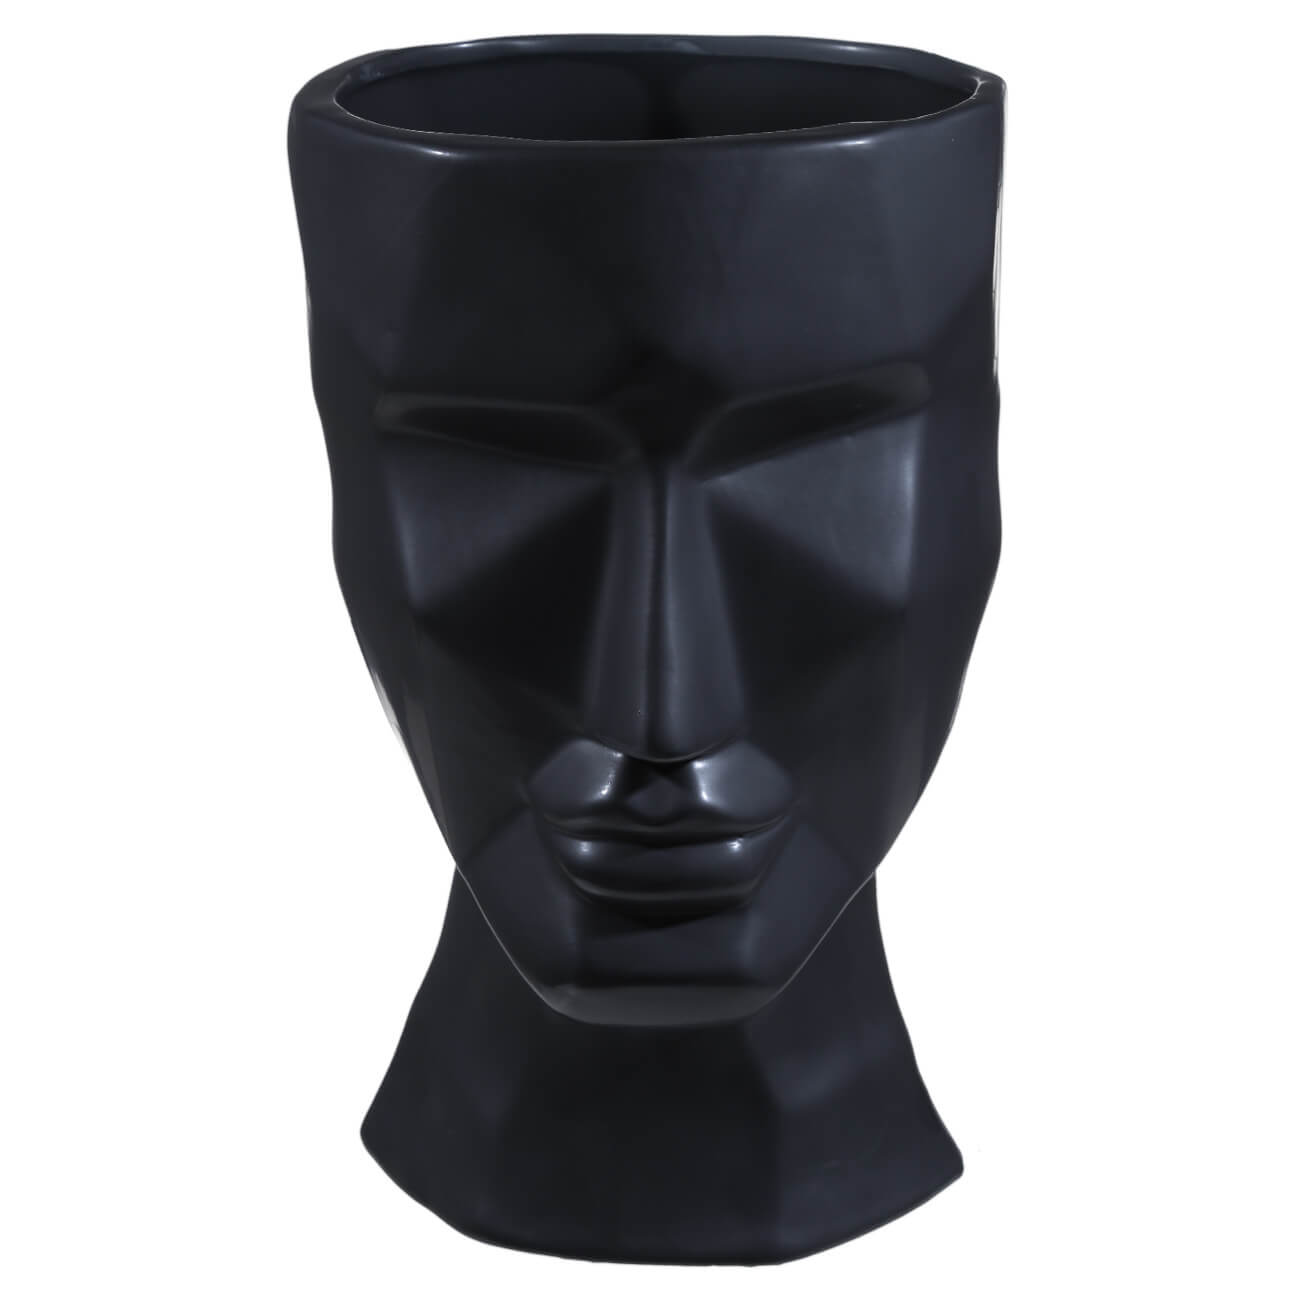 Ваза для цветов, 29 см, декоративная, керамика, черная, Графичное лицо, Face ваза для ов 26 см декоративная керамика белая лицо face